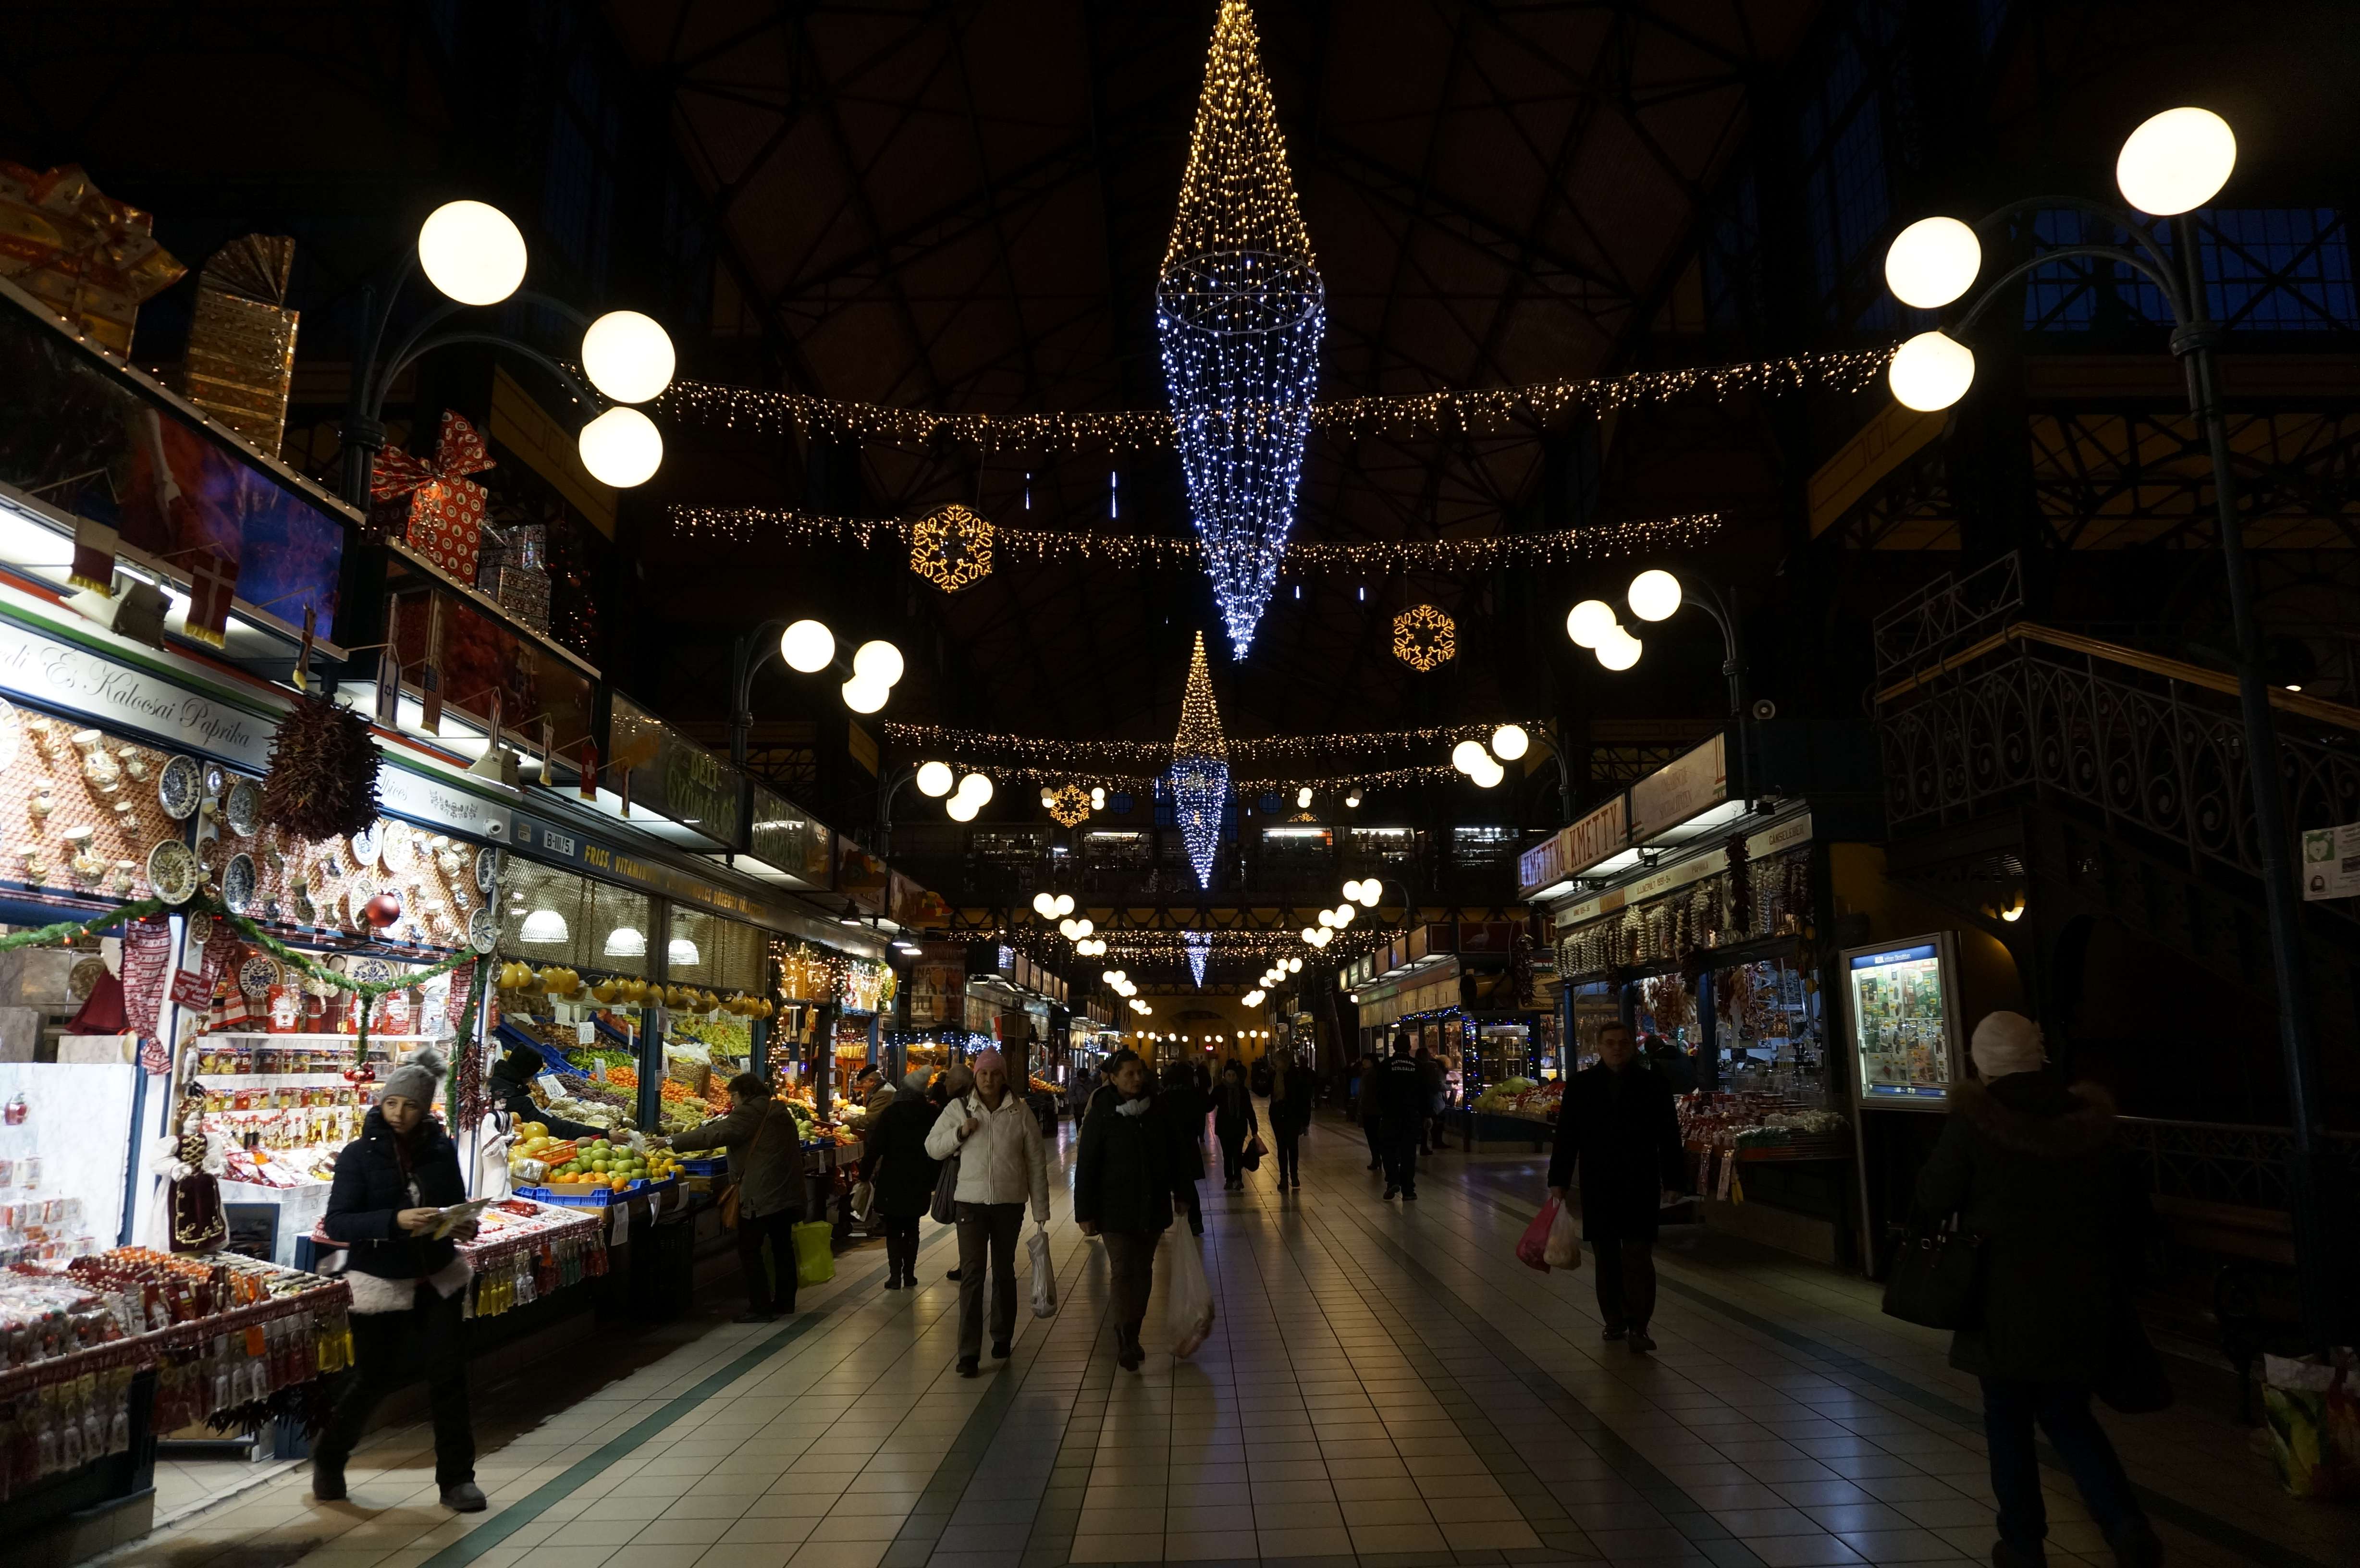 Día 5 - Budapest: Mercado y Baños Szechényi - Praga, Viena y Budapest en 1 semana: Diciembre de luces e historia (2)